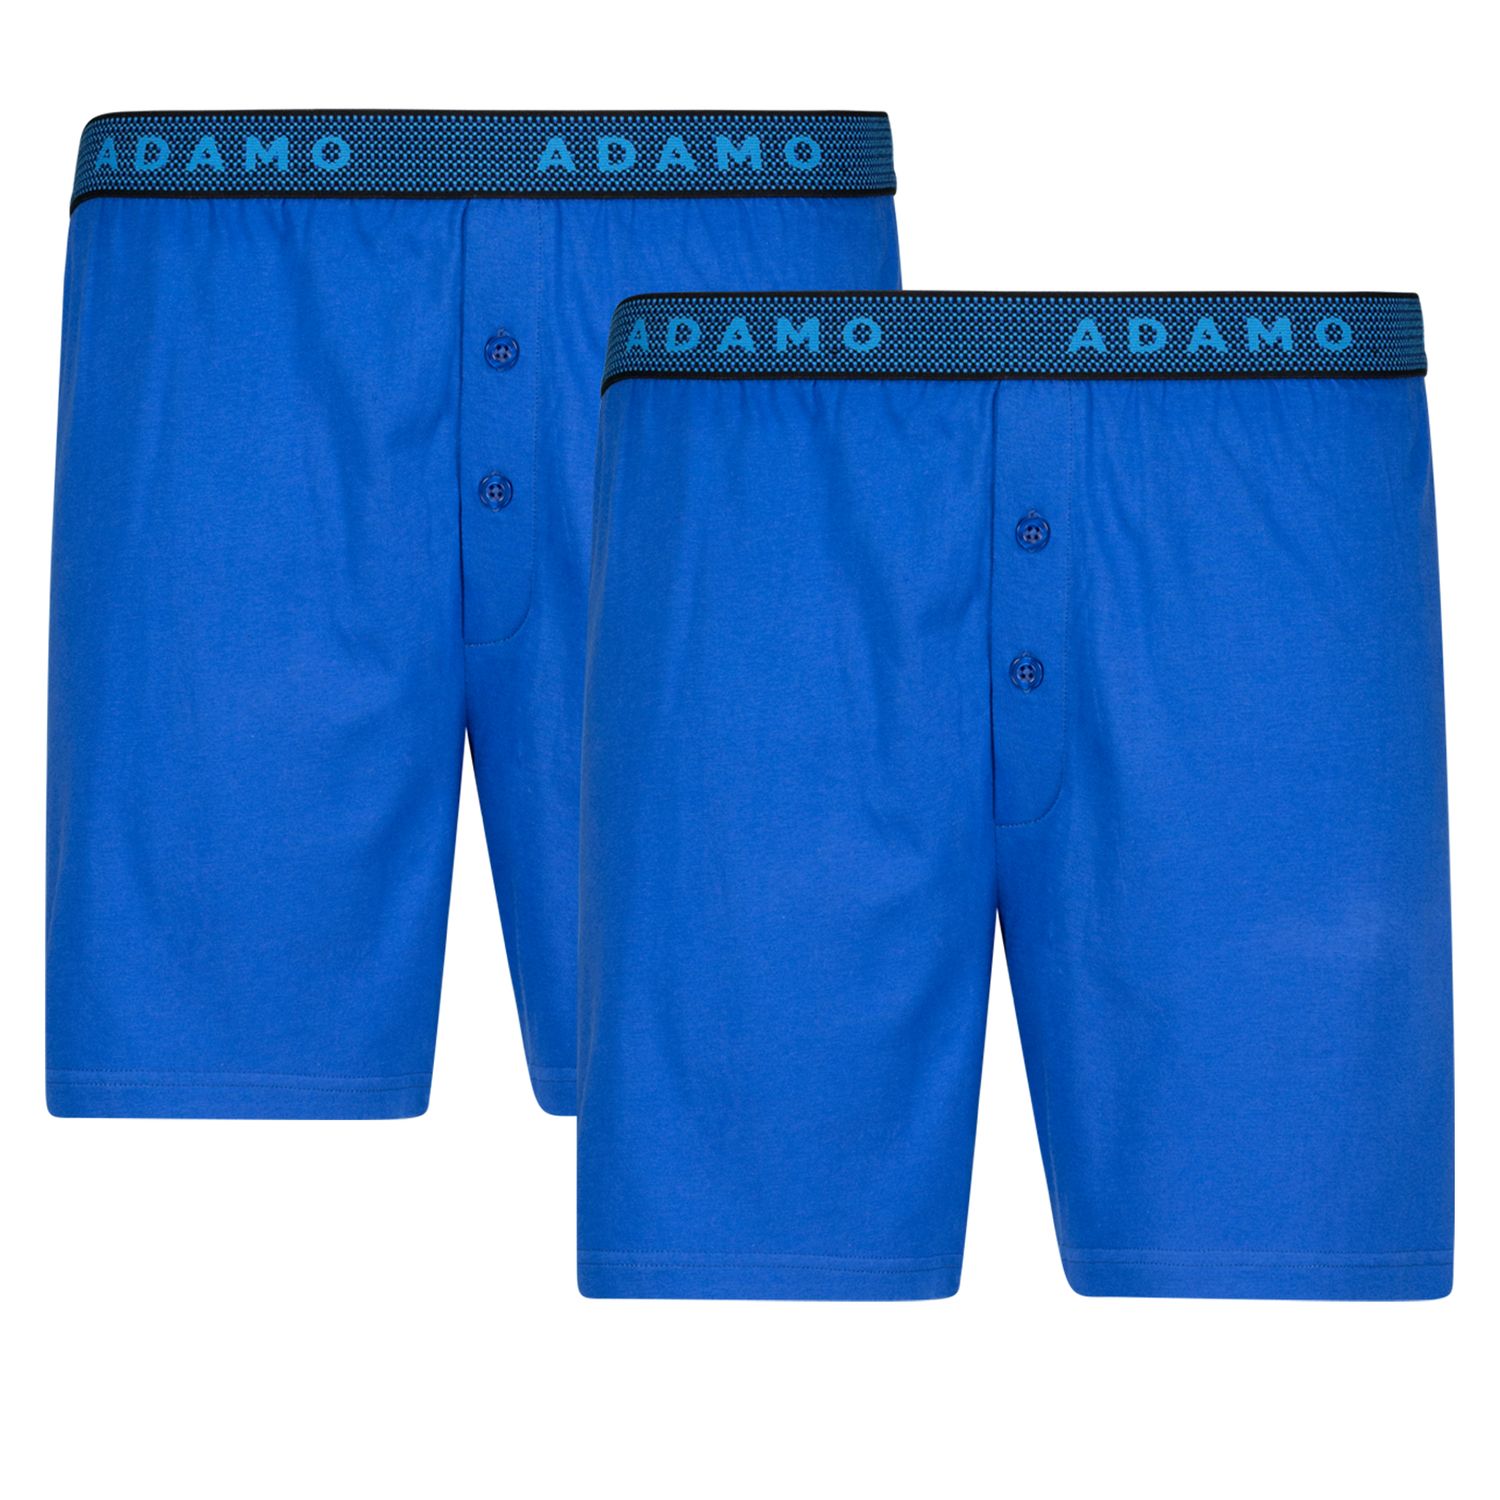 Boxers bleu royal "Jonas" by ADAMO dans un emballage double - grande taille jusqu'à 20